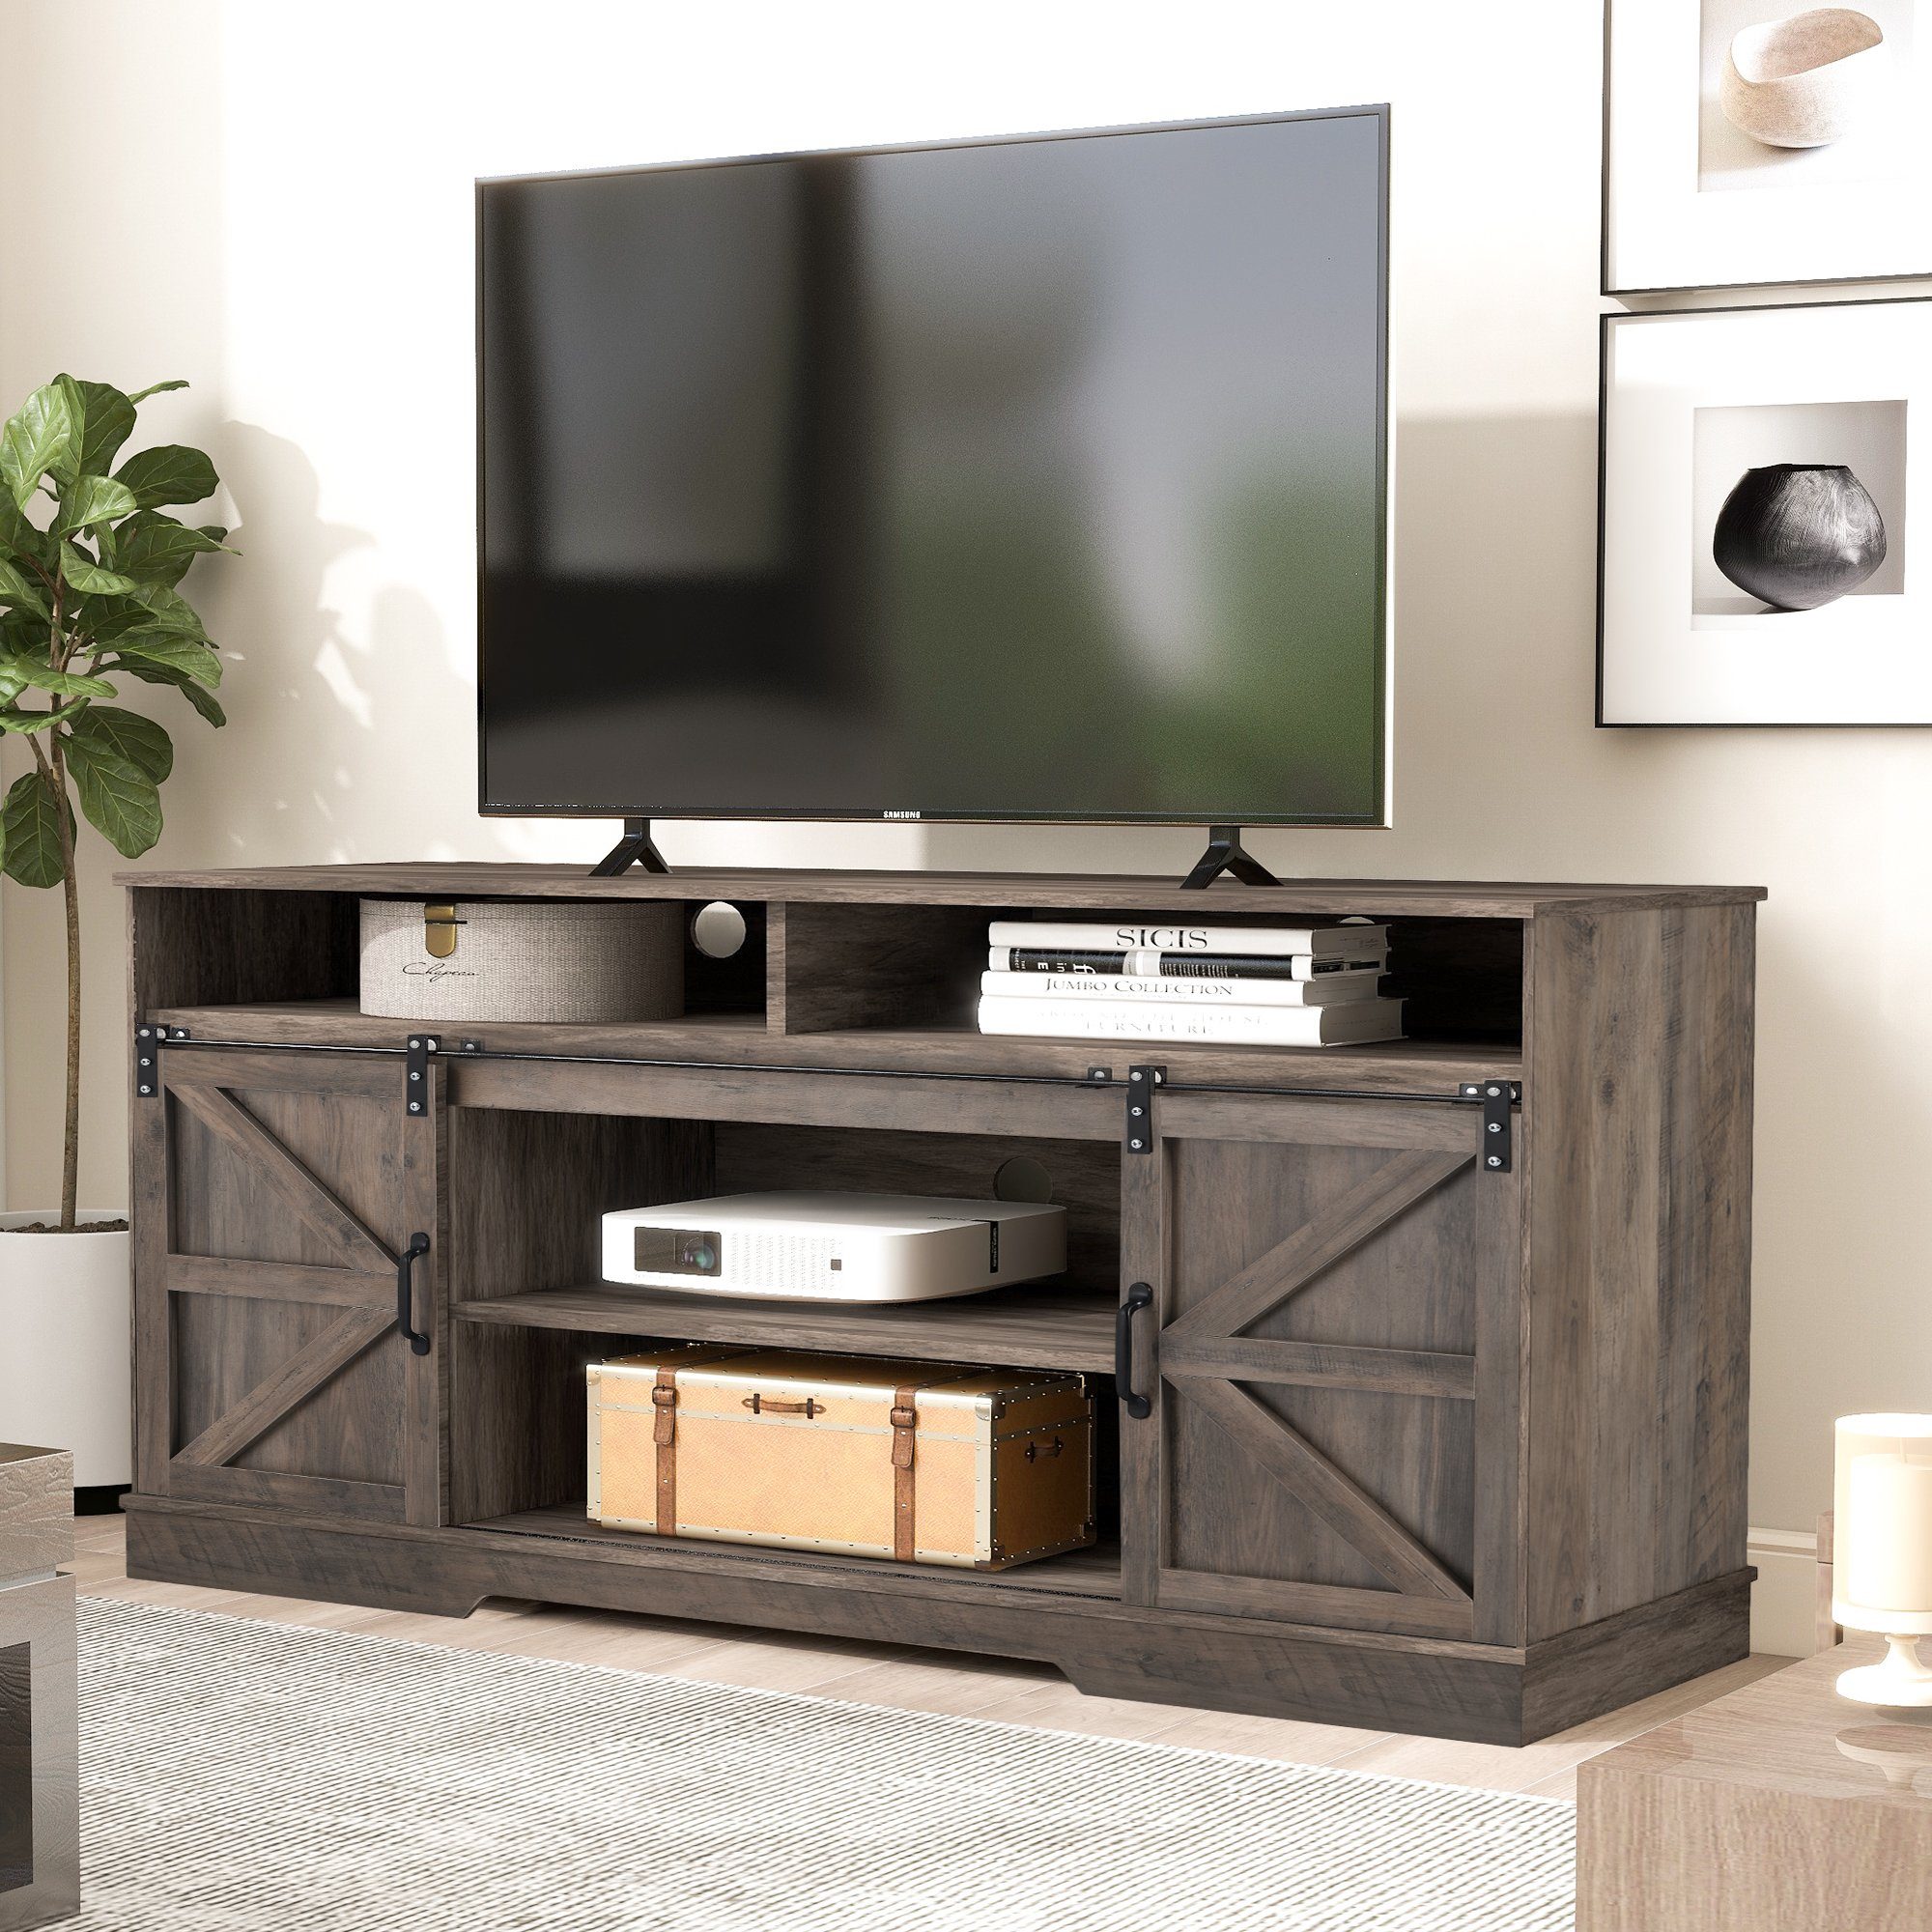 Merax Lowboard TV-Schrank, Fernsehtisch mit Schiebtüren, TV-Schrank, Fernsehtisch mit Schiebtüren, Sideboard, B:150 cm